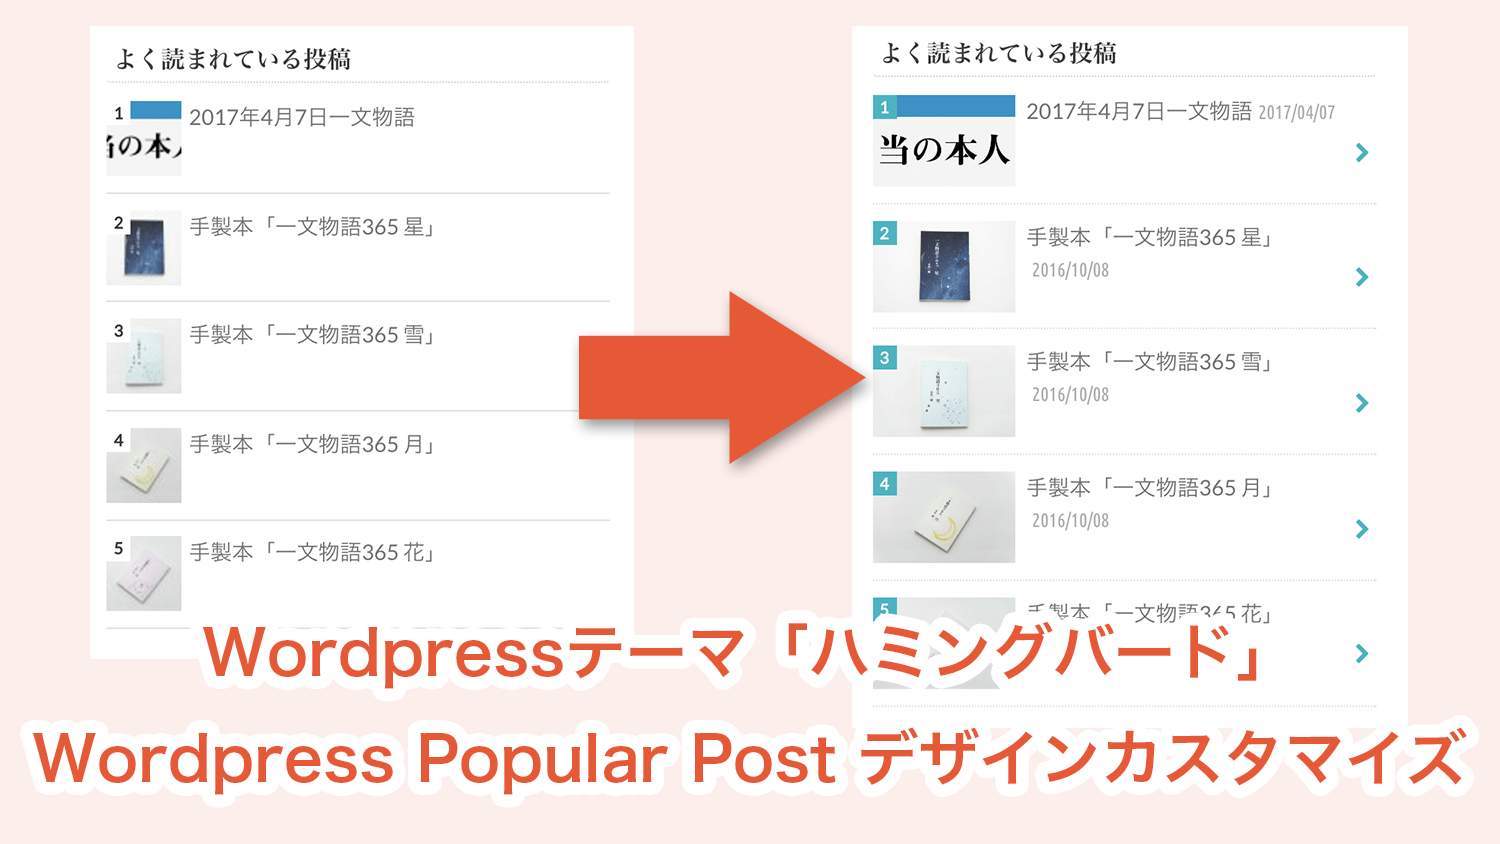 Wordpressテーマ「ハミングバード」で「Wordpress Popular Post」のデザインカスタマイズ